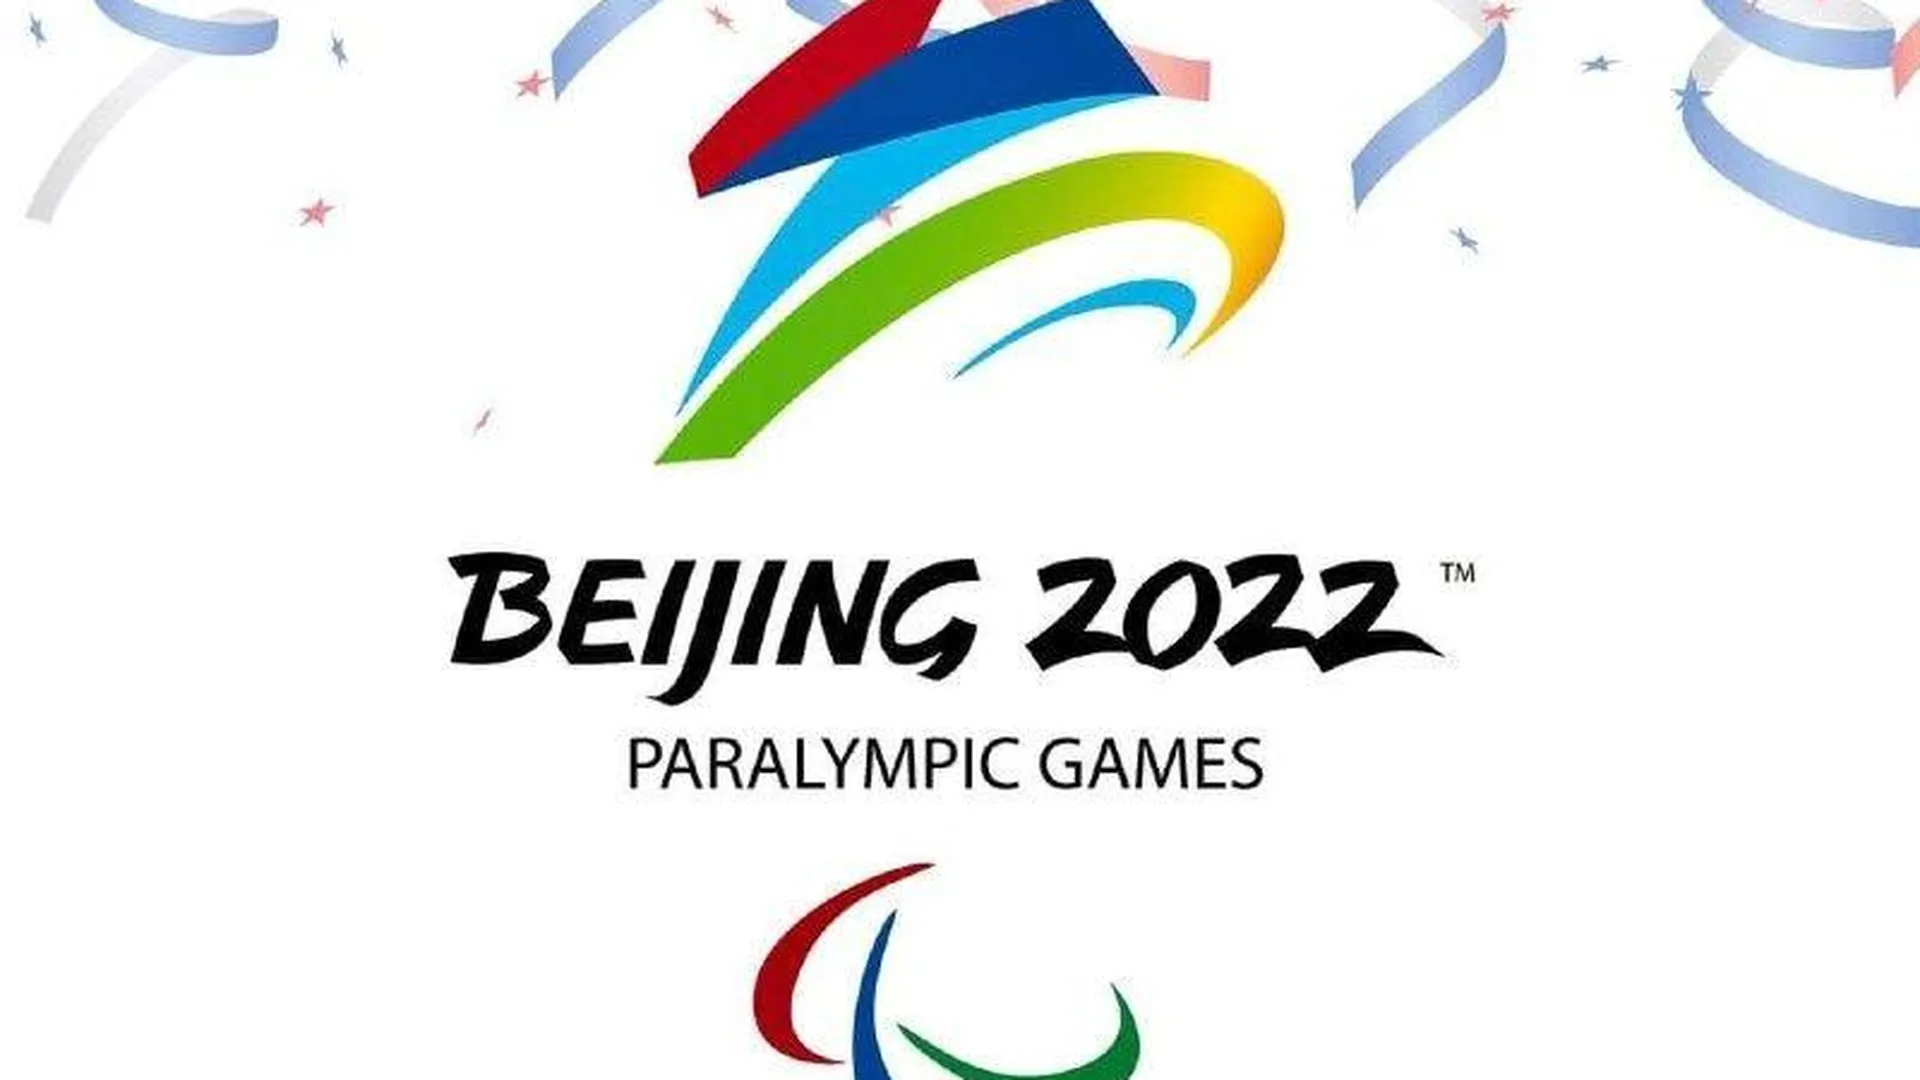 21 спортсмен из Московской области вошел в состав сборной на Паралимпийских играх в Пекине